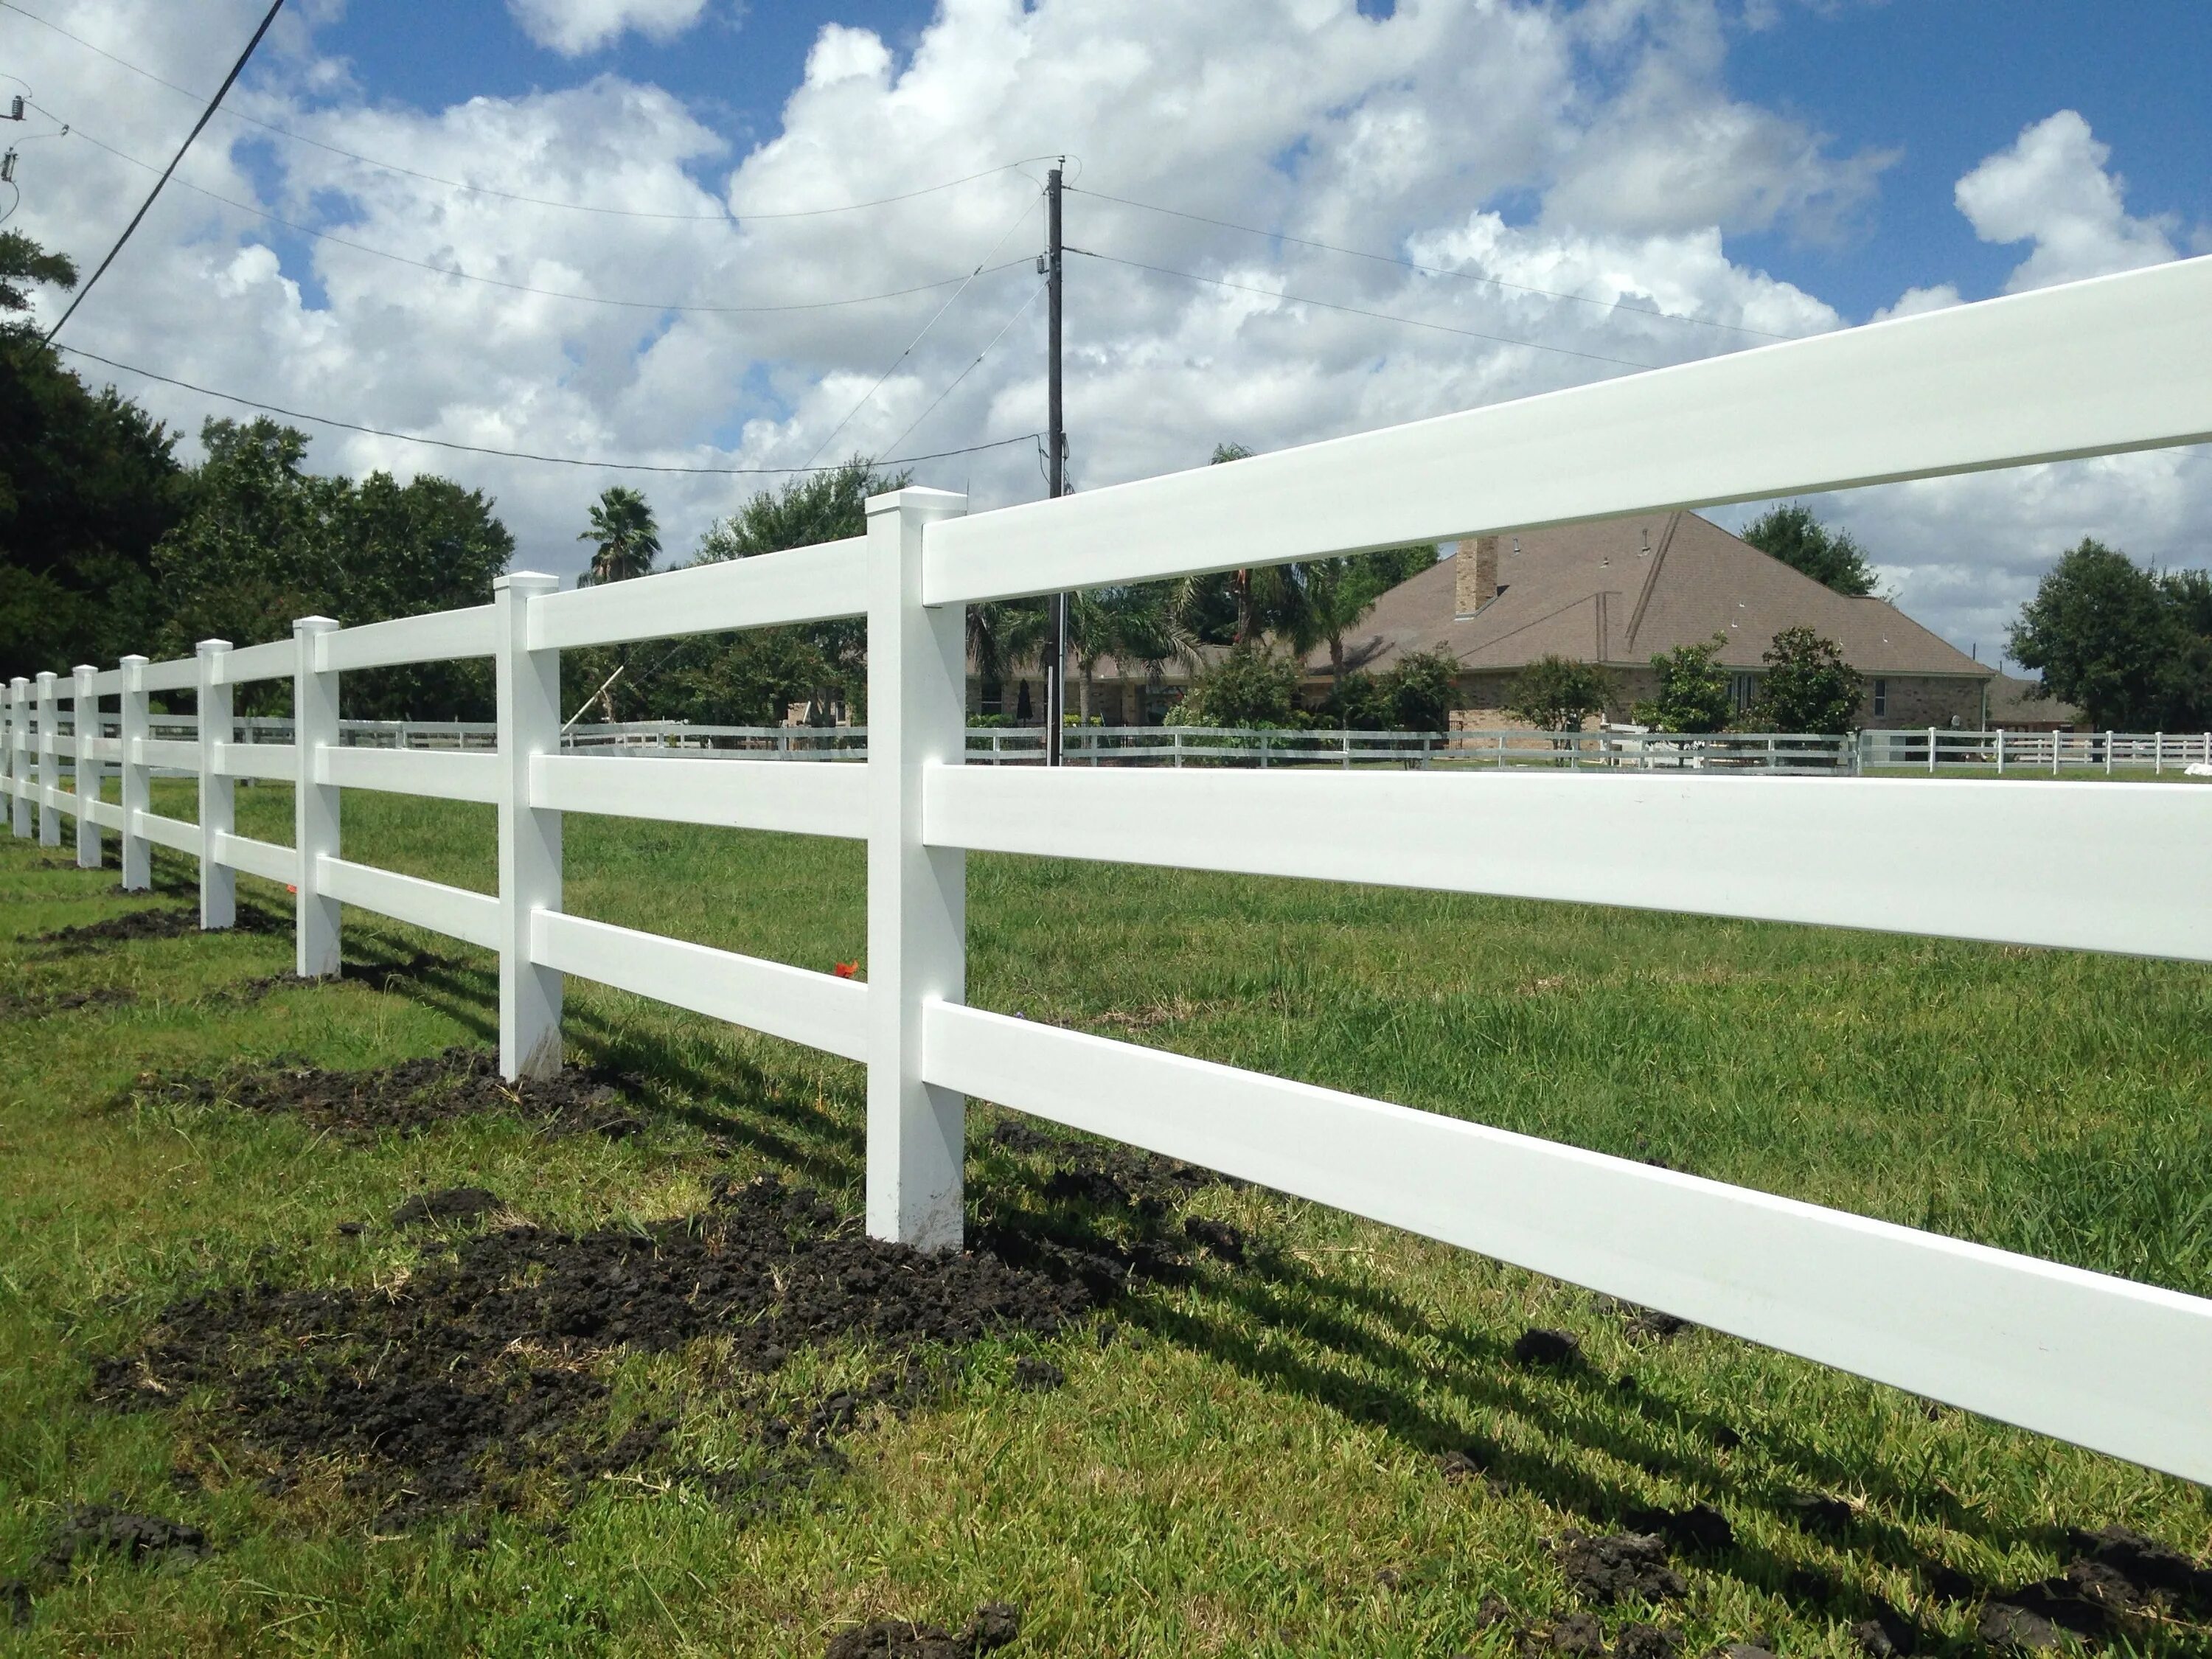 Забор ДПК ранчо. Американские заборы на ранчо. Забор в стиле ранчо. Забор ранчо деревянный.